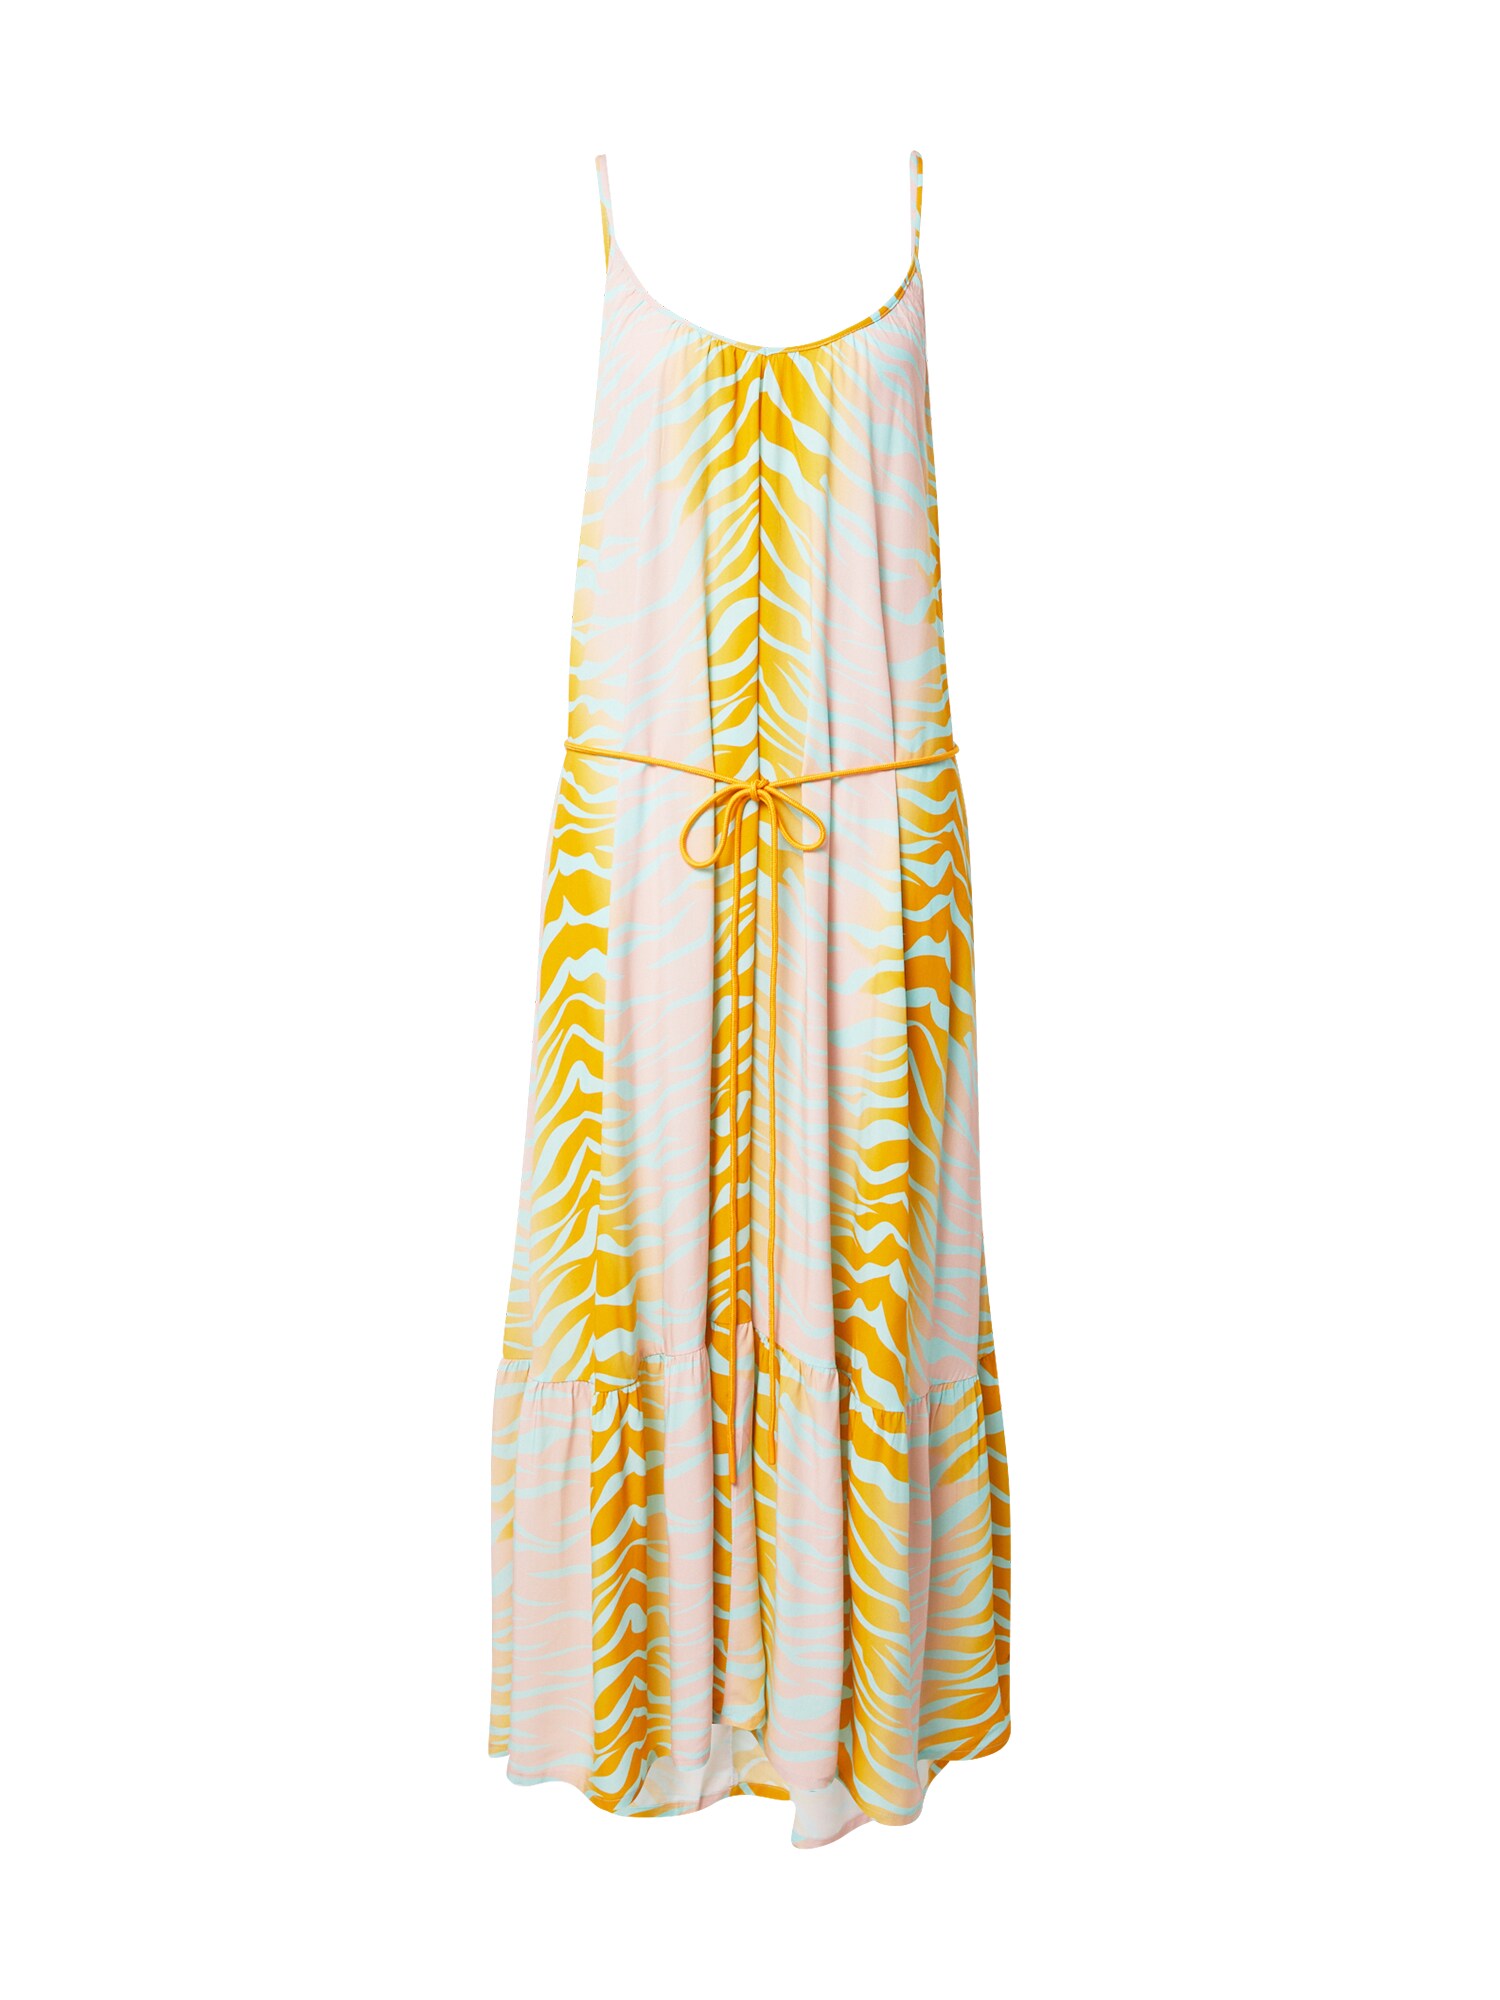 Letné šaty STUFF NEW TIGER azúrová zlatá žltá broskyňová DELICATELOVE